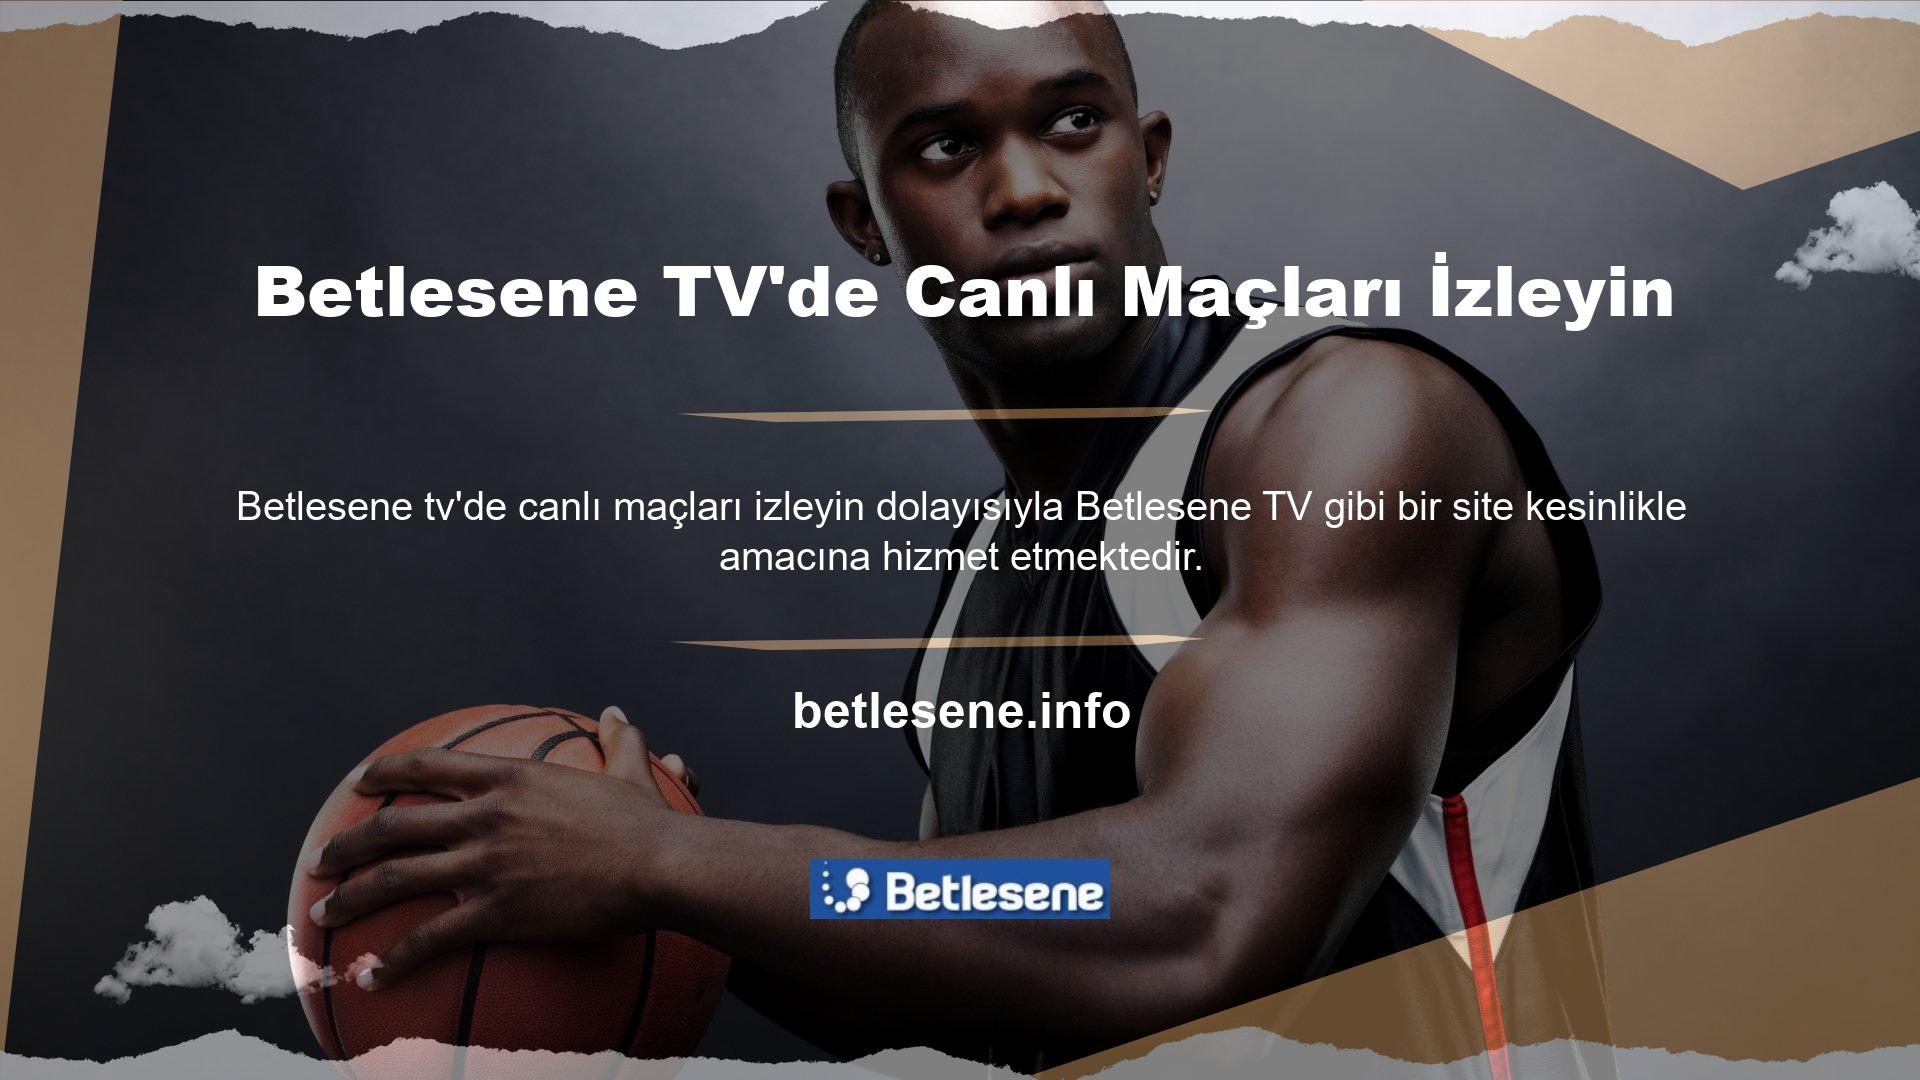 Betlesene TV’nin canlı TV bölümünde futbol ve basketbol başta olmak üzere spor müsabakalarını izleyebilir, bahis bölümünden bahislerinizi kolaylıkla takip edebilirsiniz